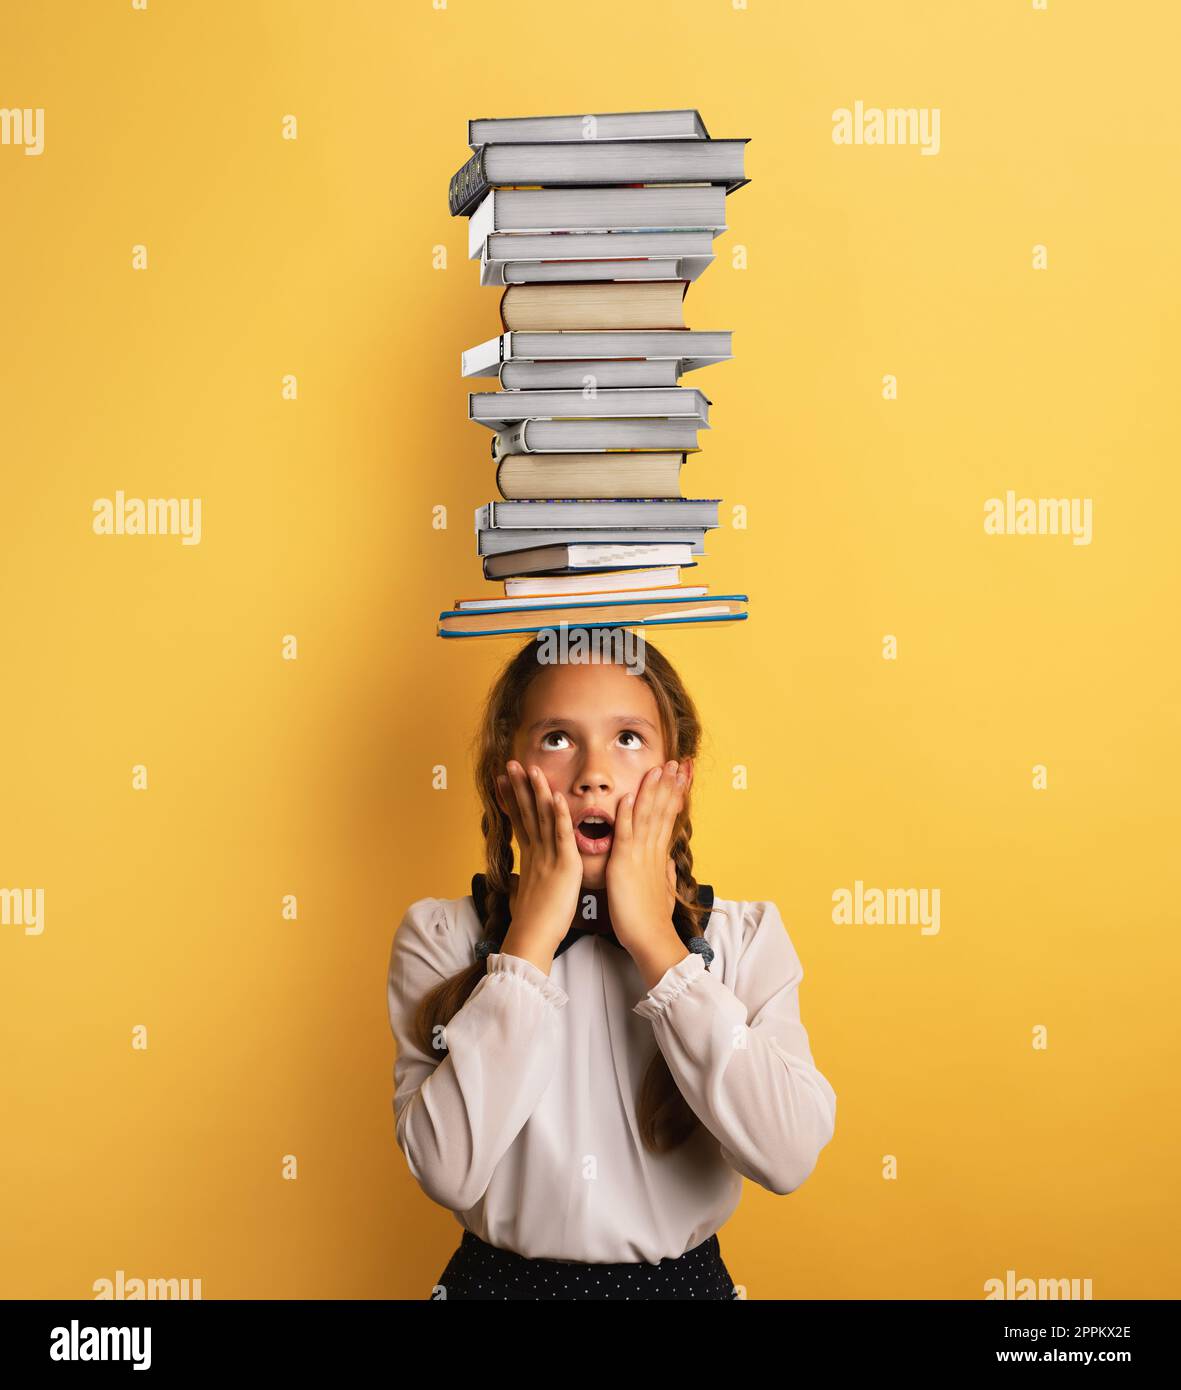 Un giovane bambino studente preoccupato a causa di una quantità eccessiva di libri da leggere e studiare. Sfondo giallo Foto Stock